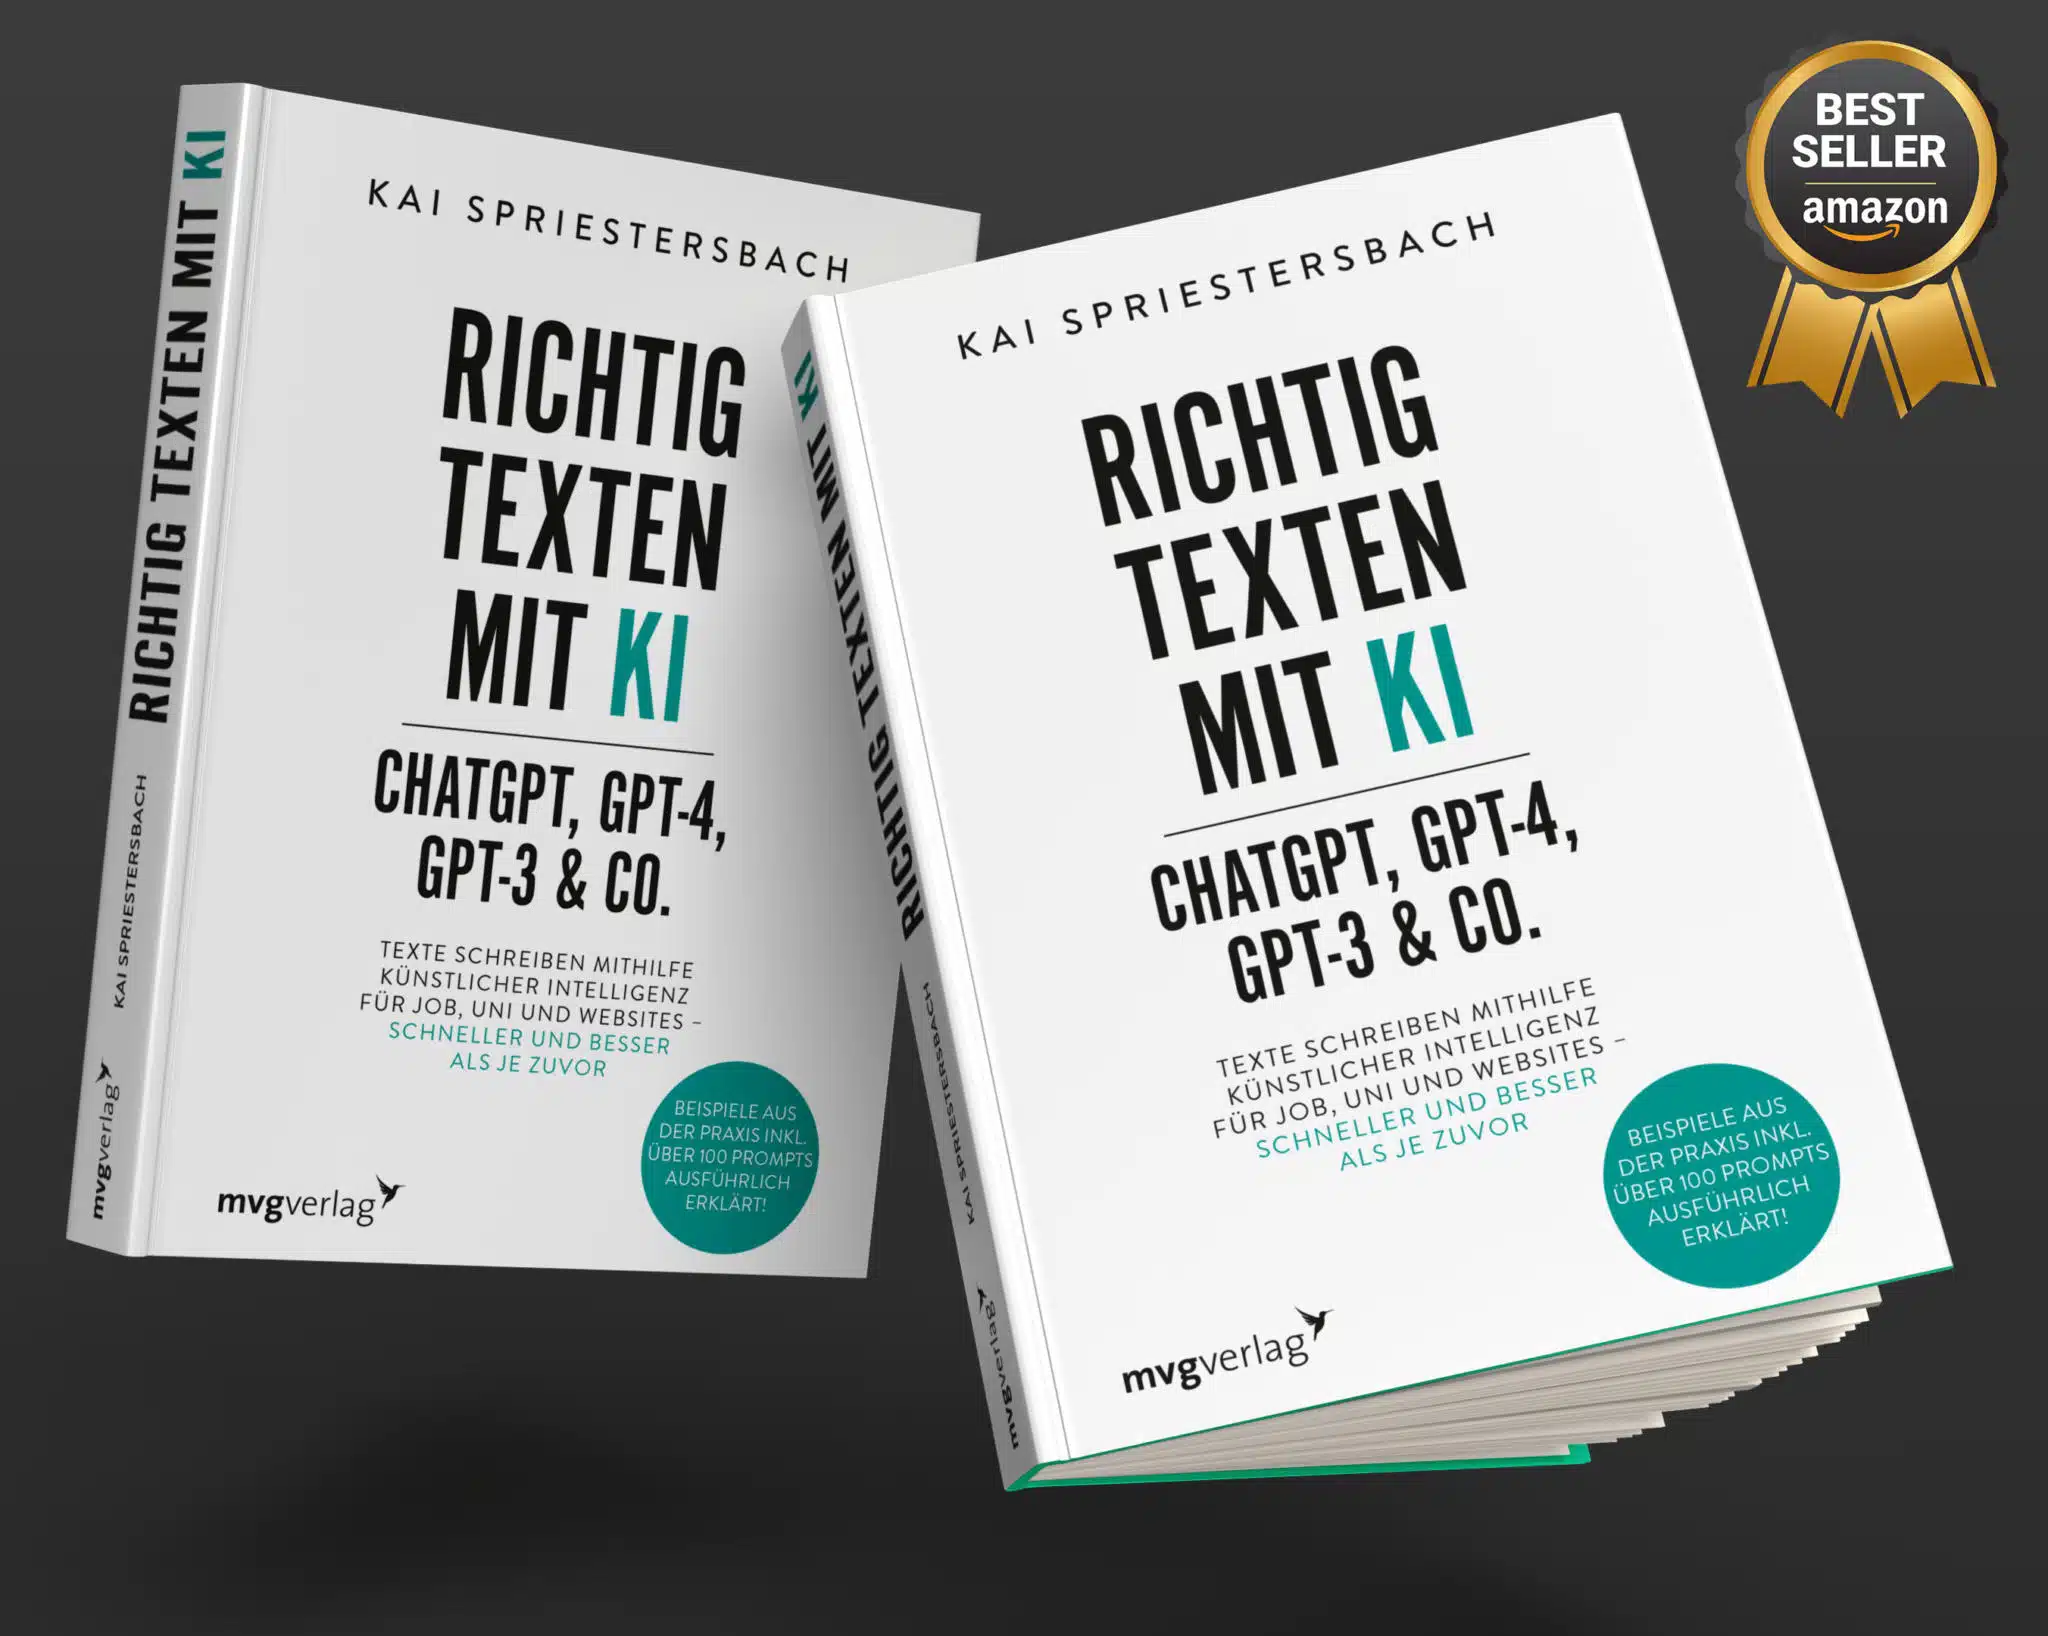 richtig-texten-mit-ki-buch-chatgpt-kai-spriestersbach-amazon-bestseller